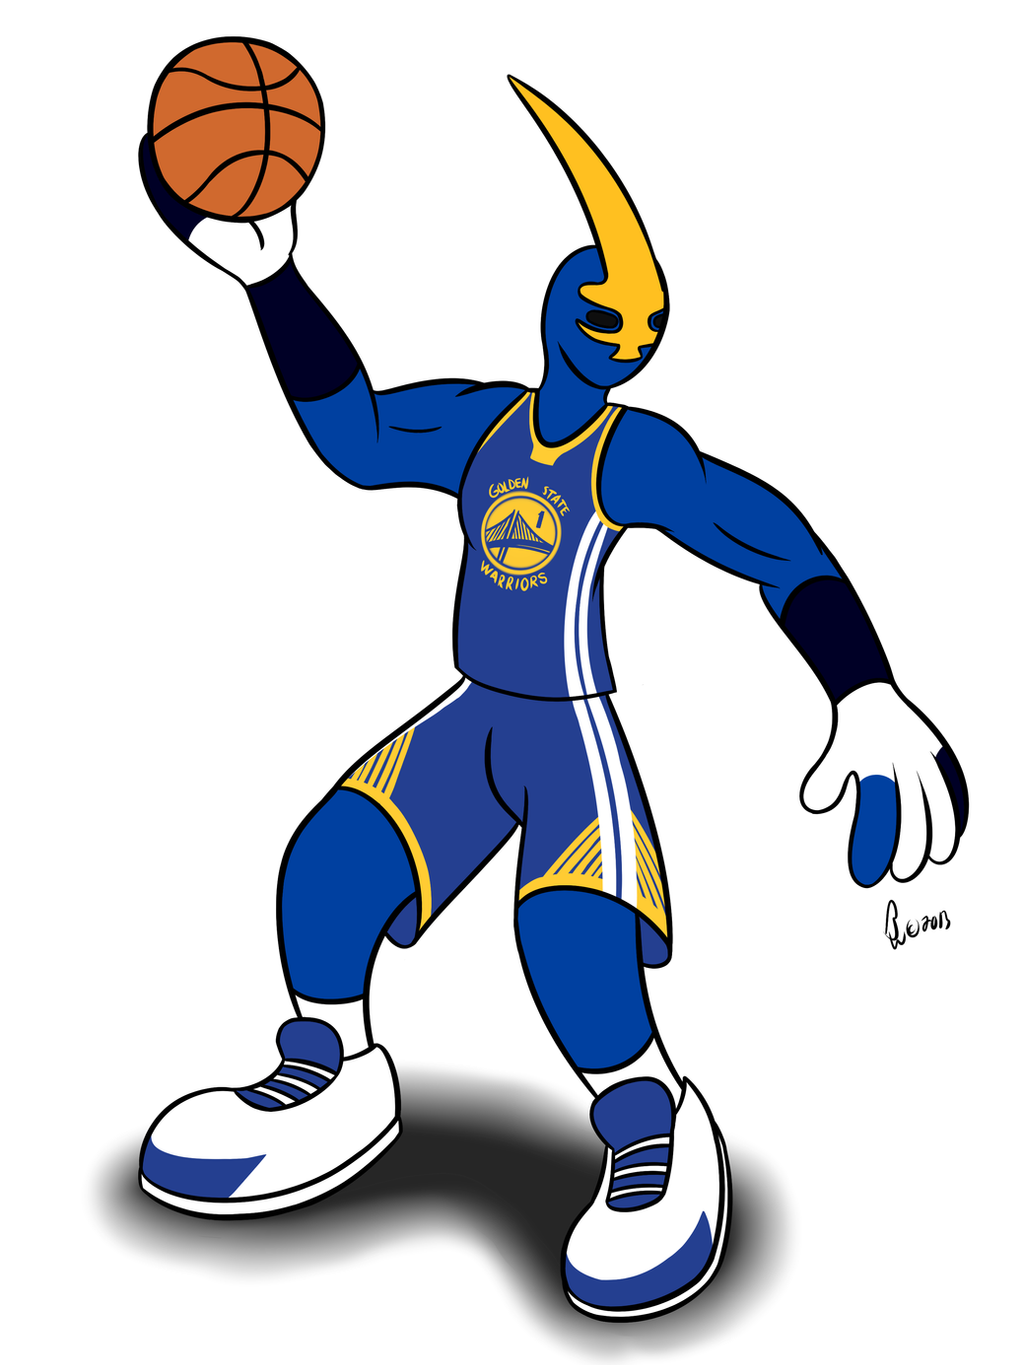 NBA Mascots - Thunder by Bleuxwolf on DeviantArt1024 x 1365